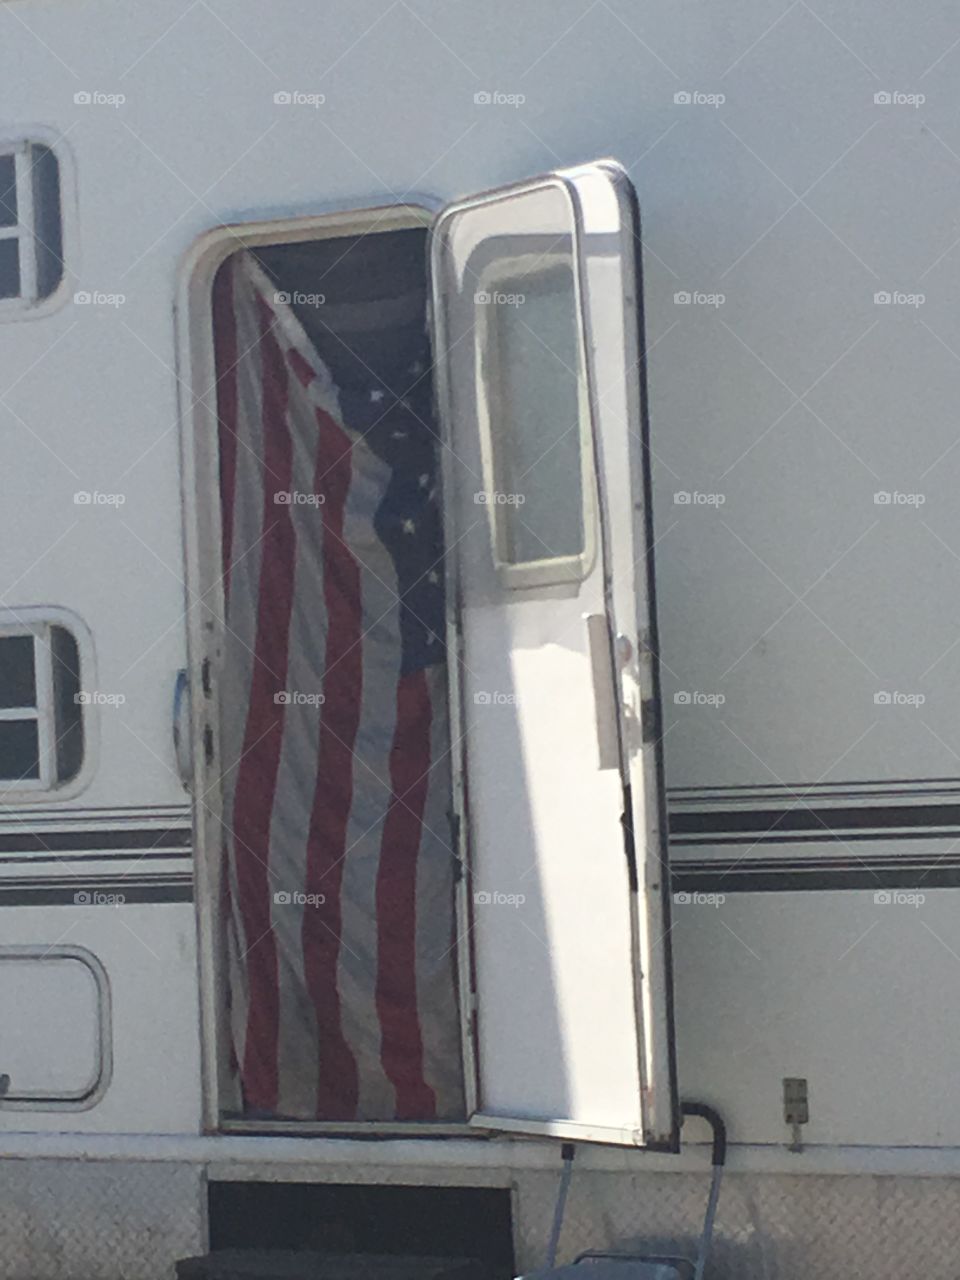 Flag in trailer
